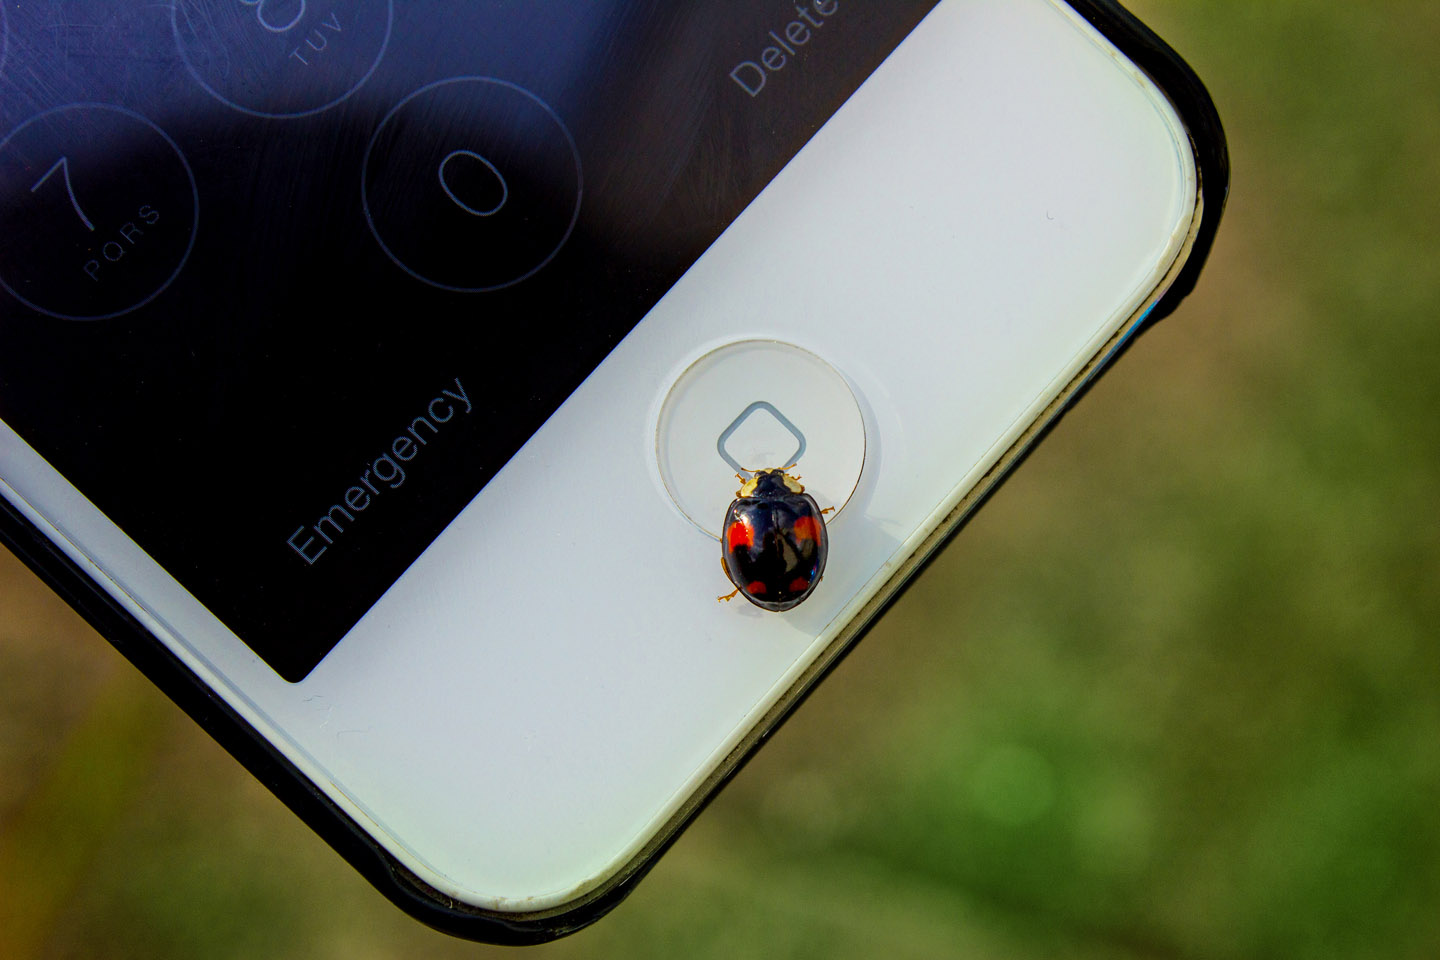 web-10-phone-internet-ladybug-technology-cc-pavlina-jane.jpg